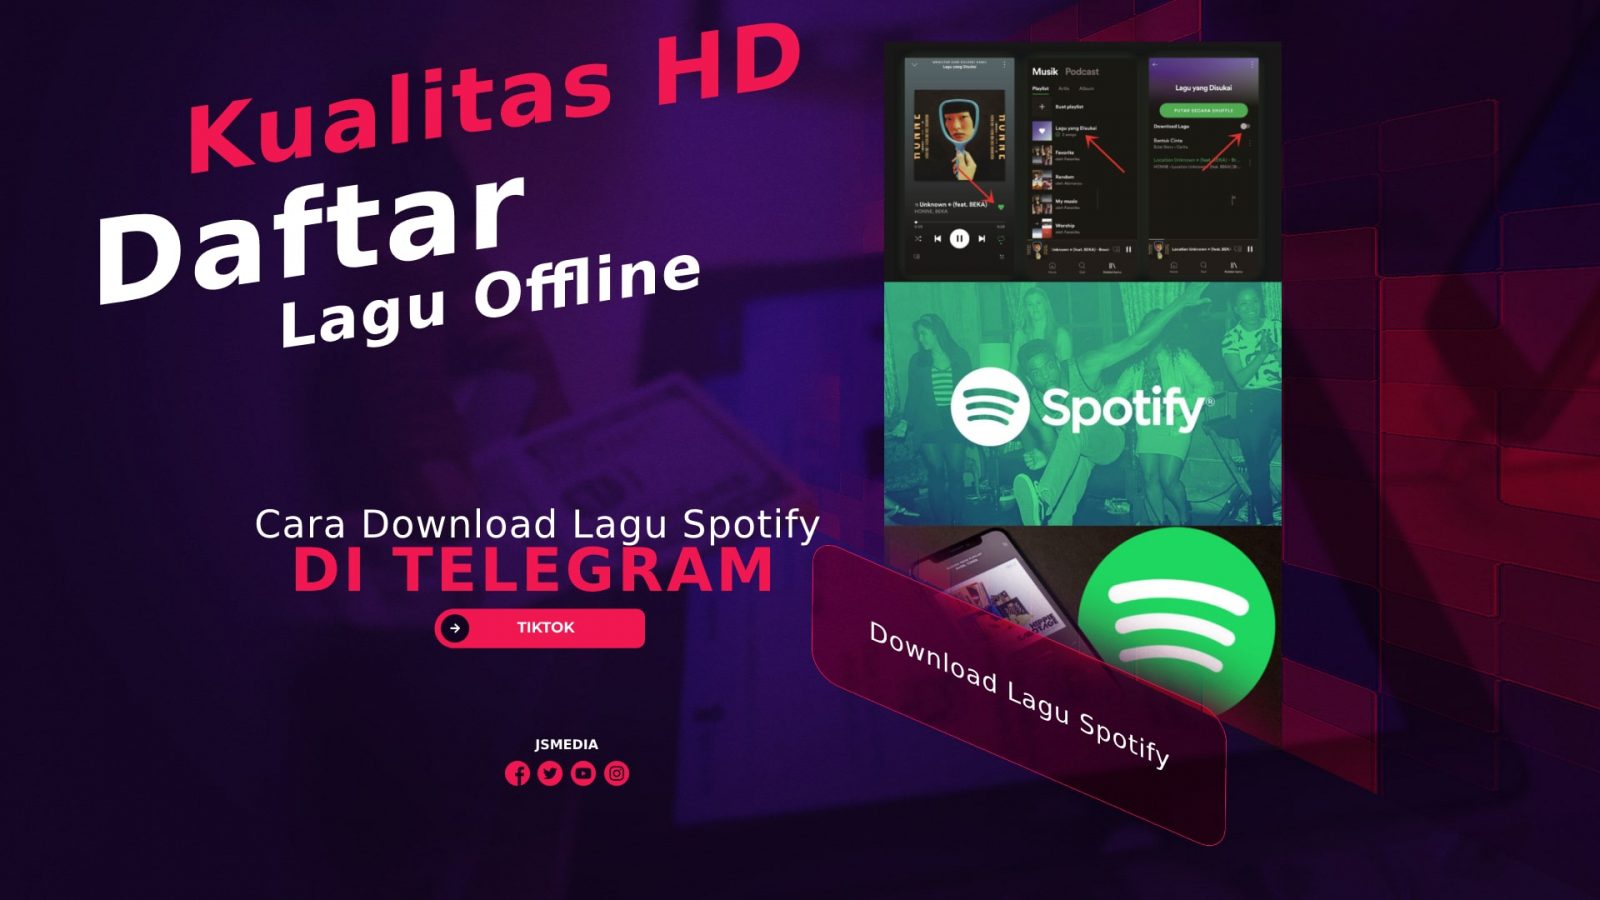 Cara Download Lagu Spotify di Telegram, Kualitas HD